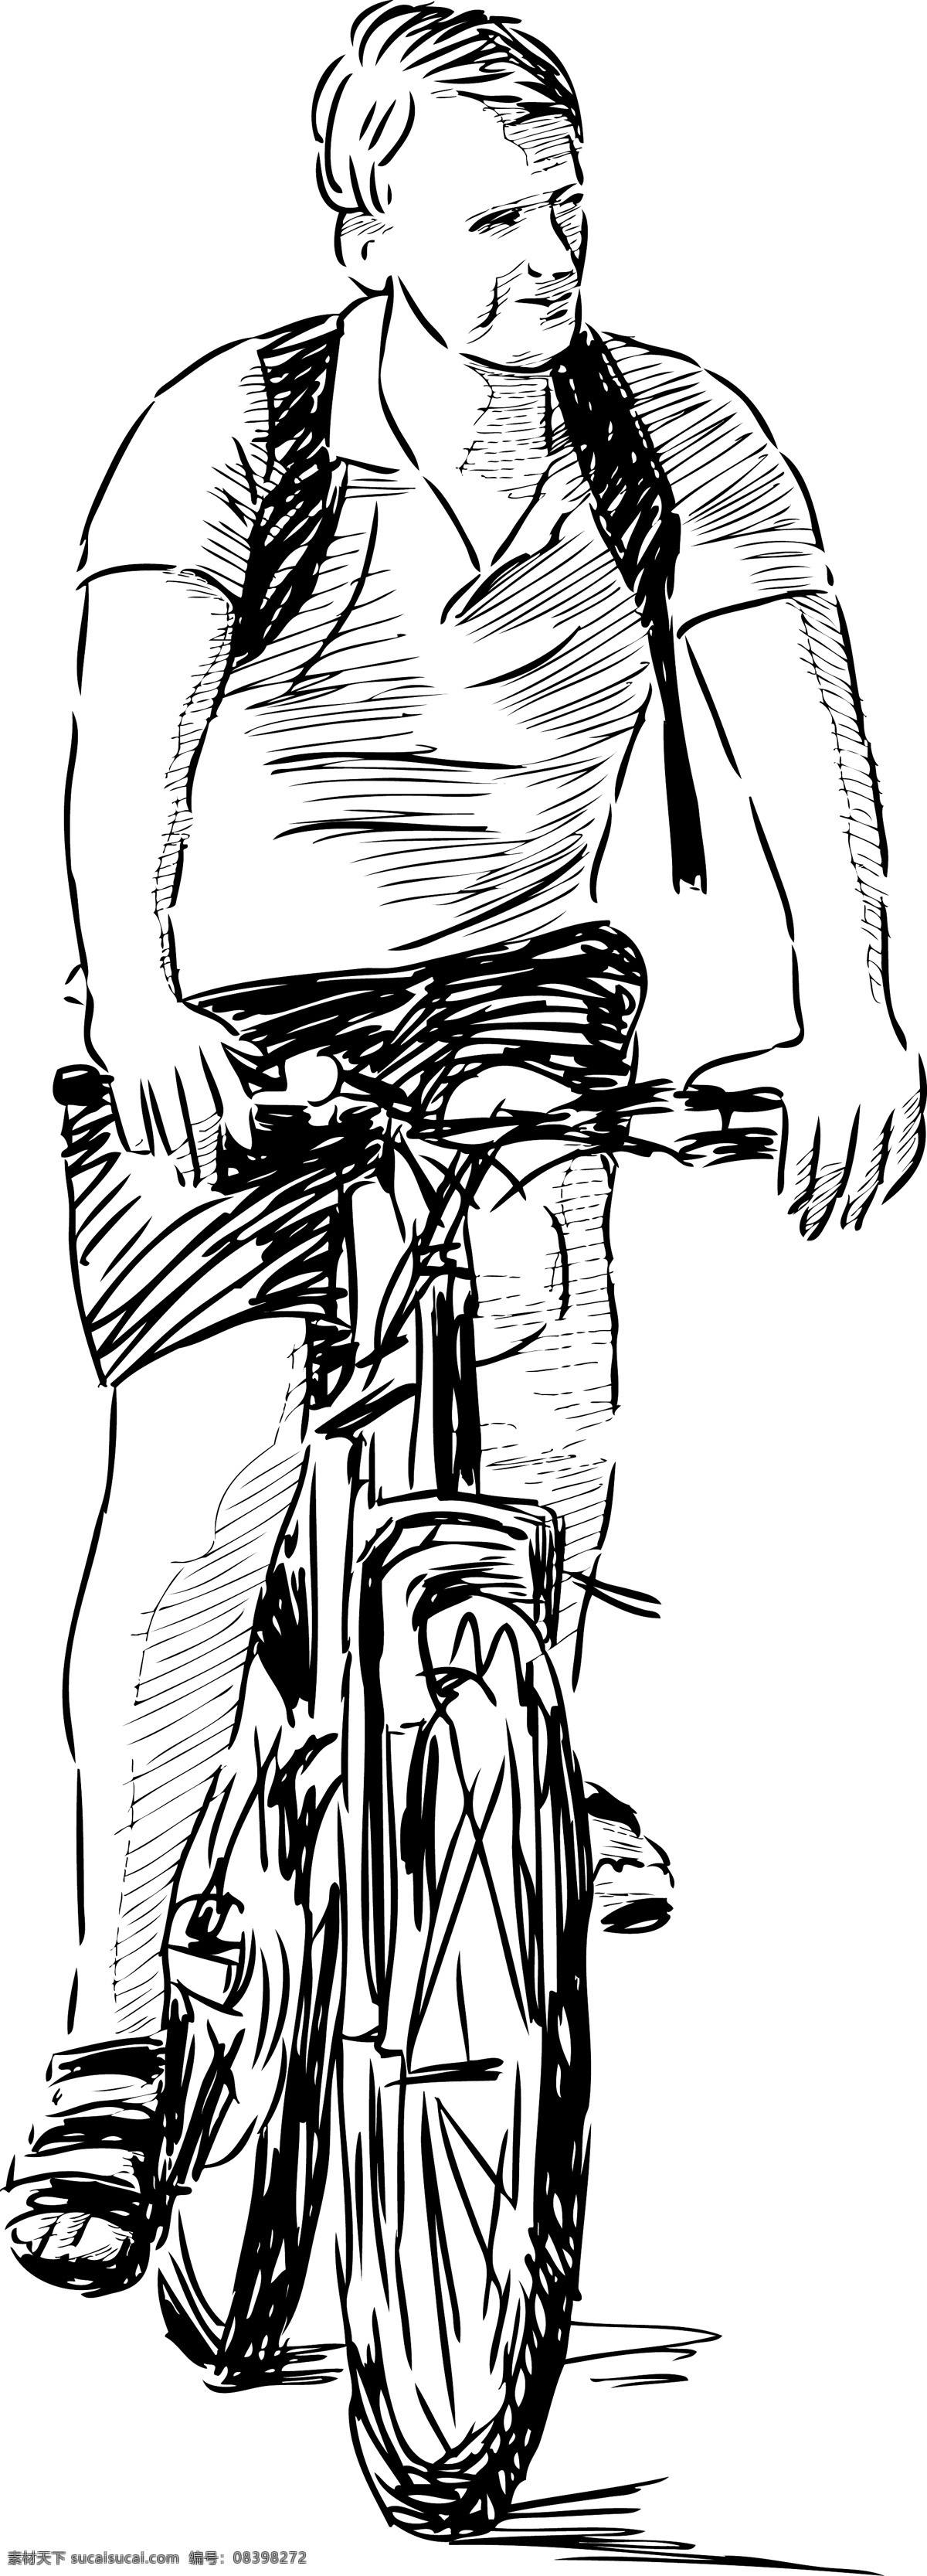 骑行的人 人物 体育 运动 骑自行车 速写 白色